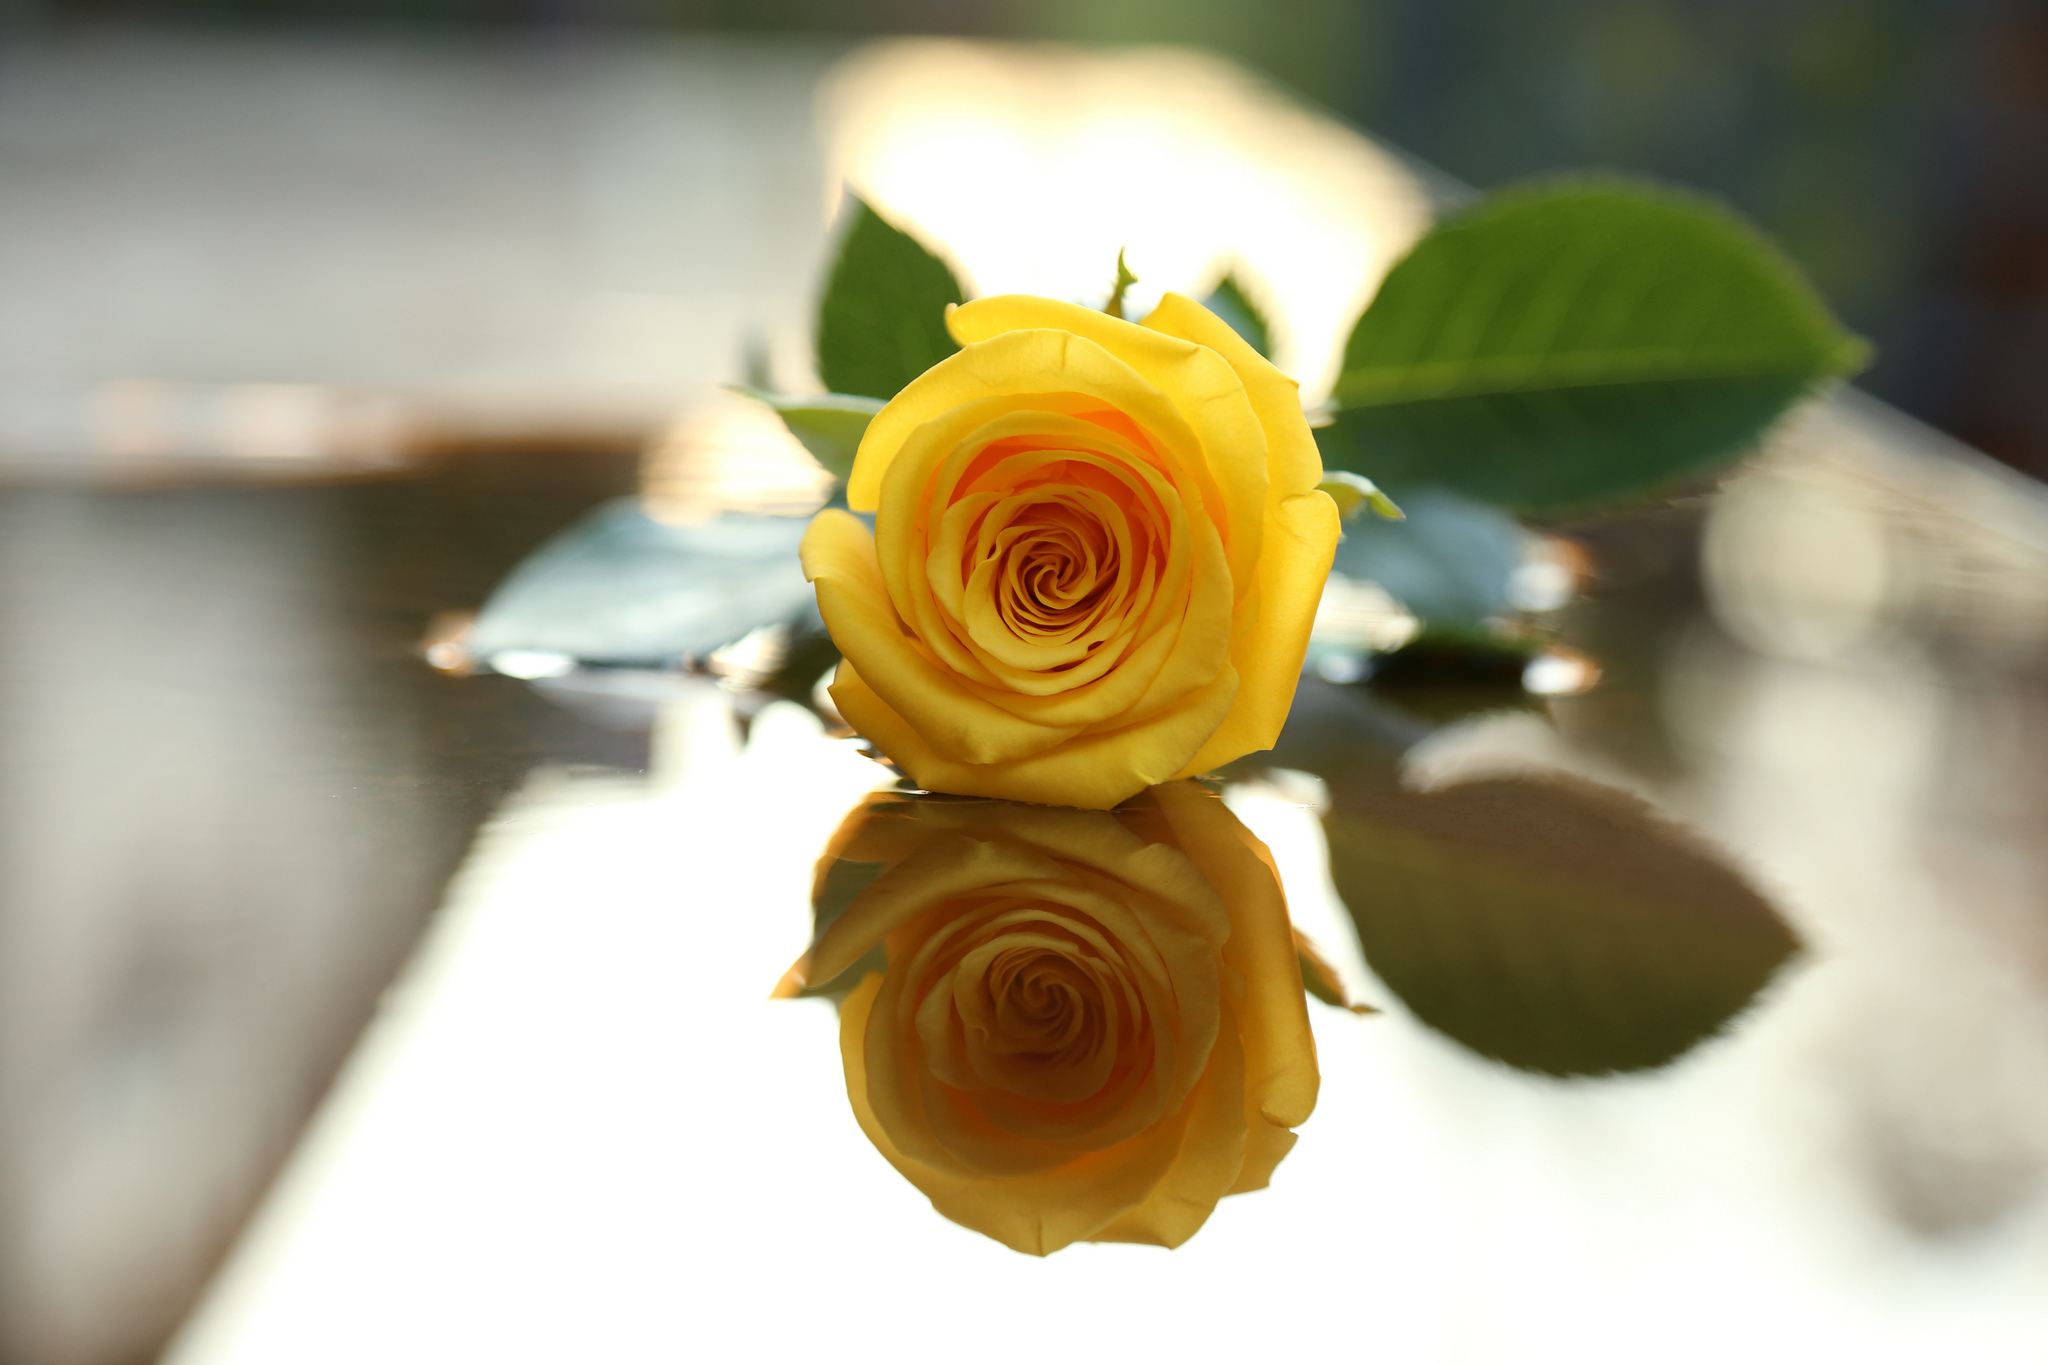 Hoa hồng vàng tierra naturaleza: Một quá trình tuyệt vời để khám phá vẻ đẹp hoang dã của hoa hồng vàng tierra naturaleza. Hình ảnh được tạo ra bởi chuyên gia nhiếp ảnh sẽ khiến bạn bị cuốn hút và muốn khám phá thêm về sự phiêu lưu và thú vị mà hoa hồng mang lại.